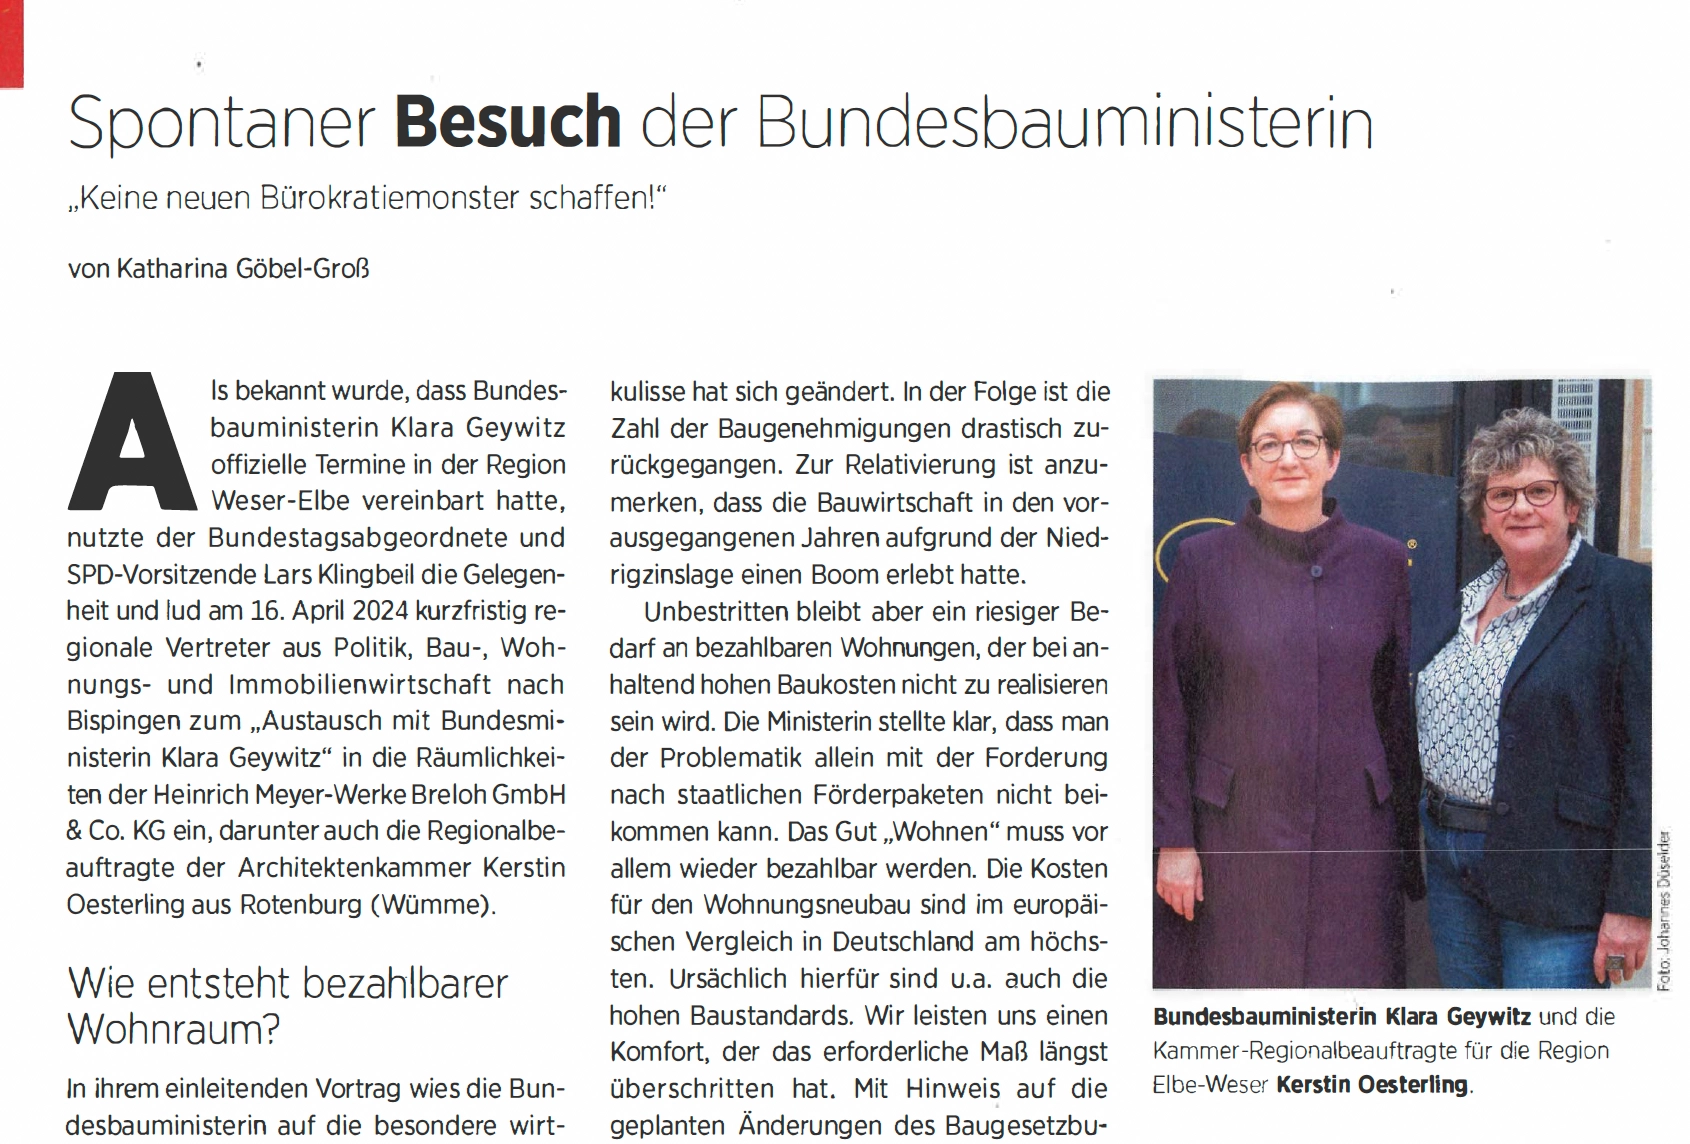 Bundesbauministerin Klara Geywitz und die Kammer-Regionalbeauftragte für die Region Elbe-Weser Kerstin Oesterling.